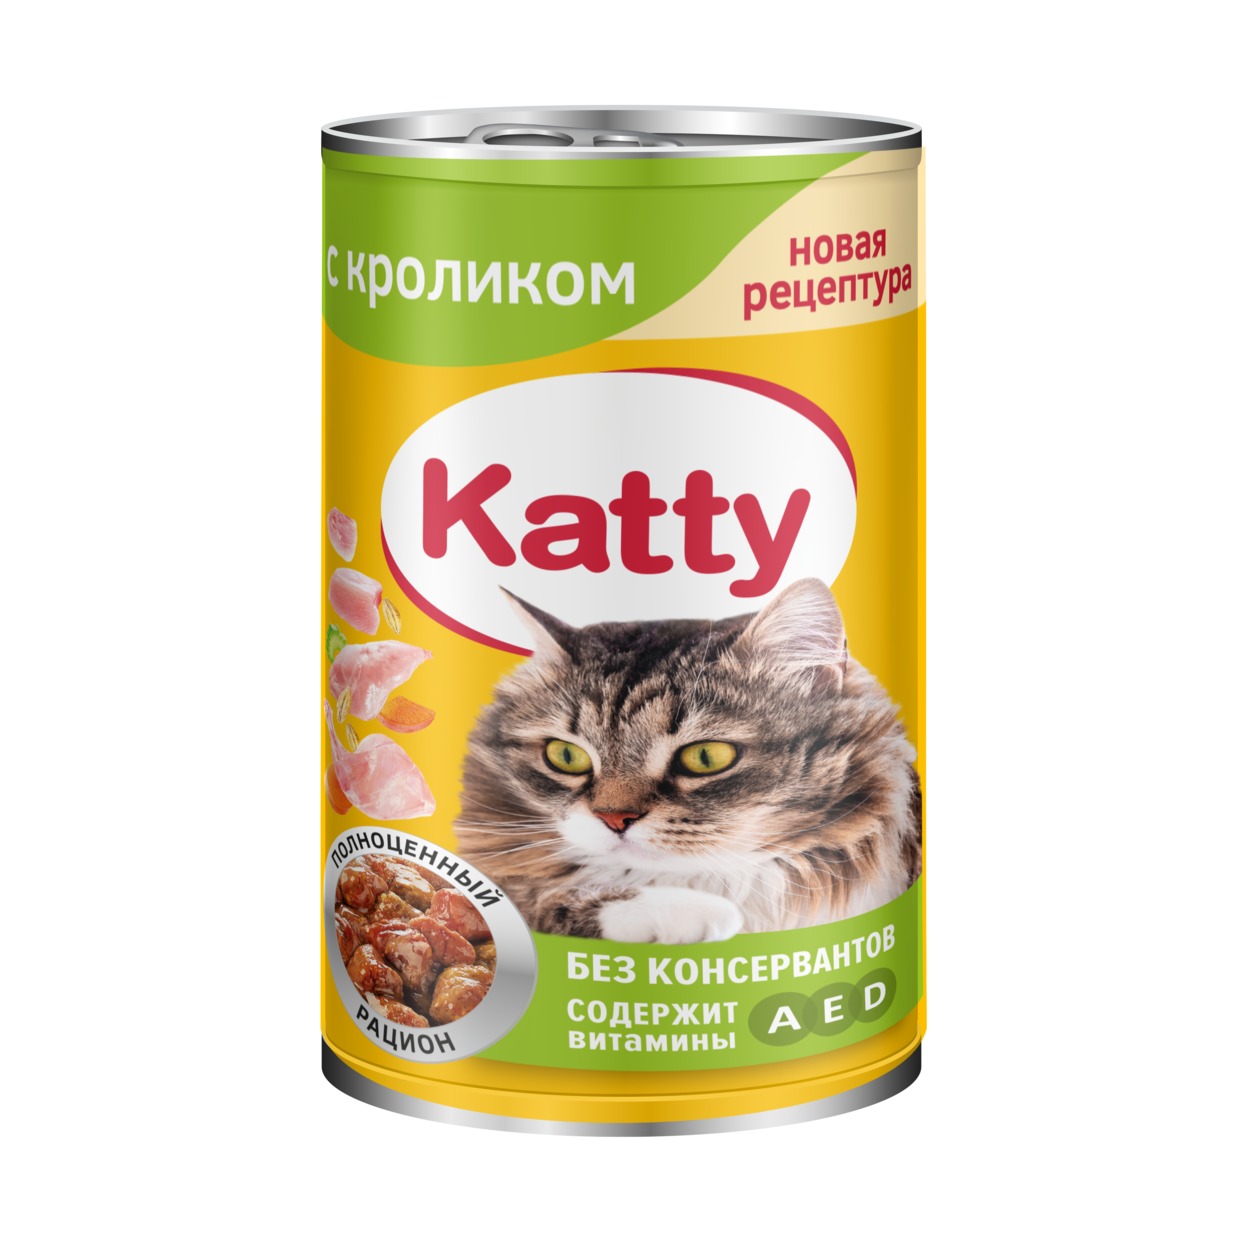 Katty Корм консервированный полнорационный для кошек с кроликом в соусе, ж/б 415 гр. по акции в Пятерочке